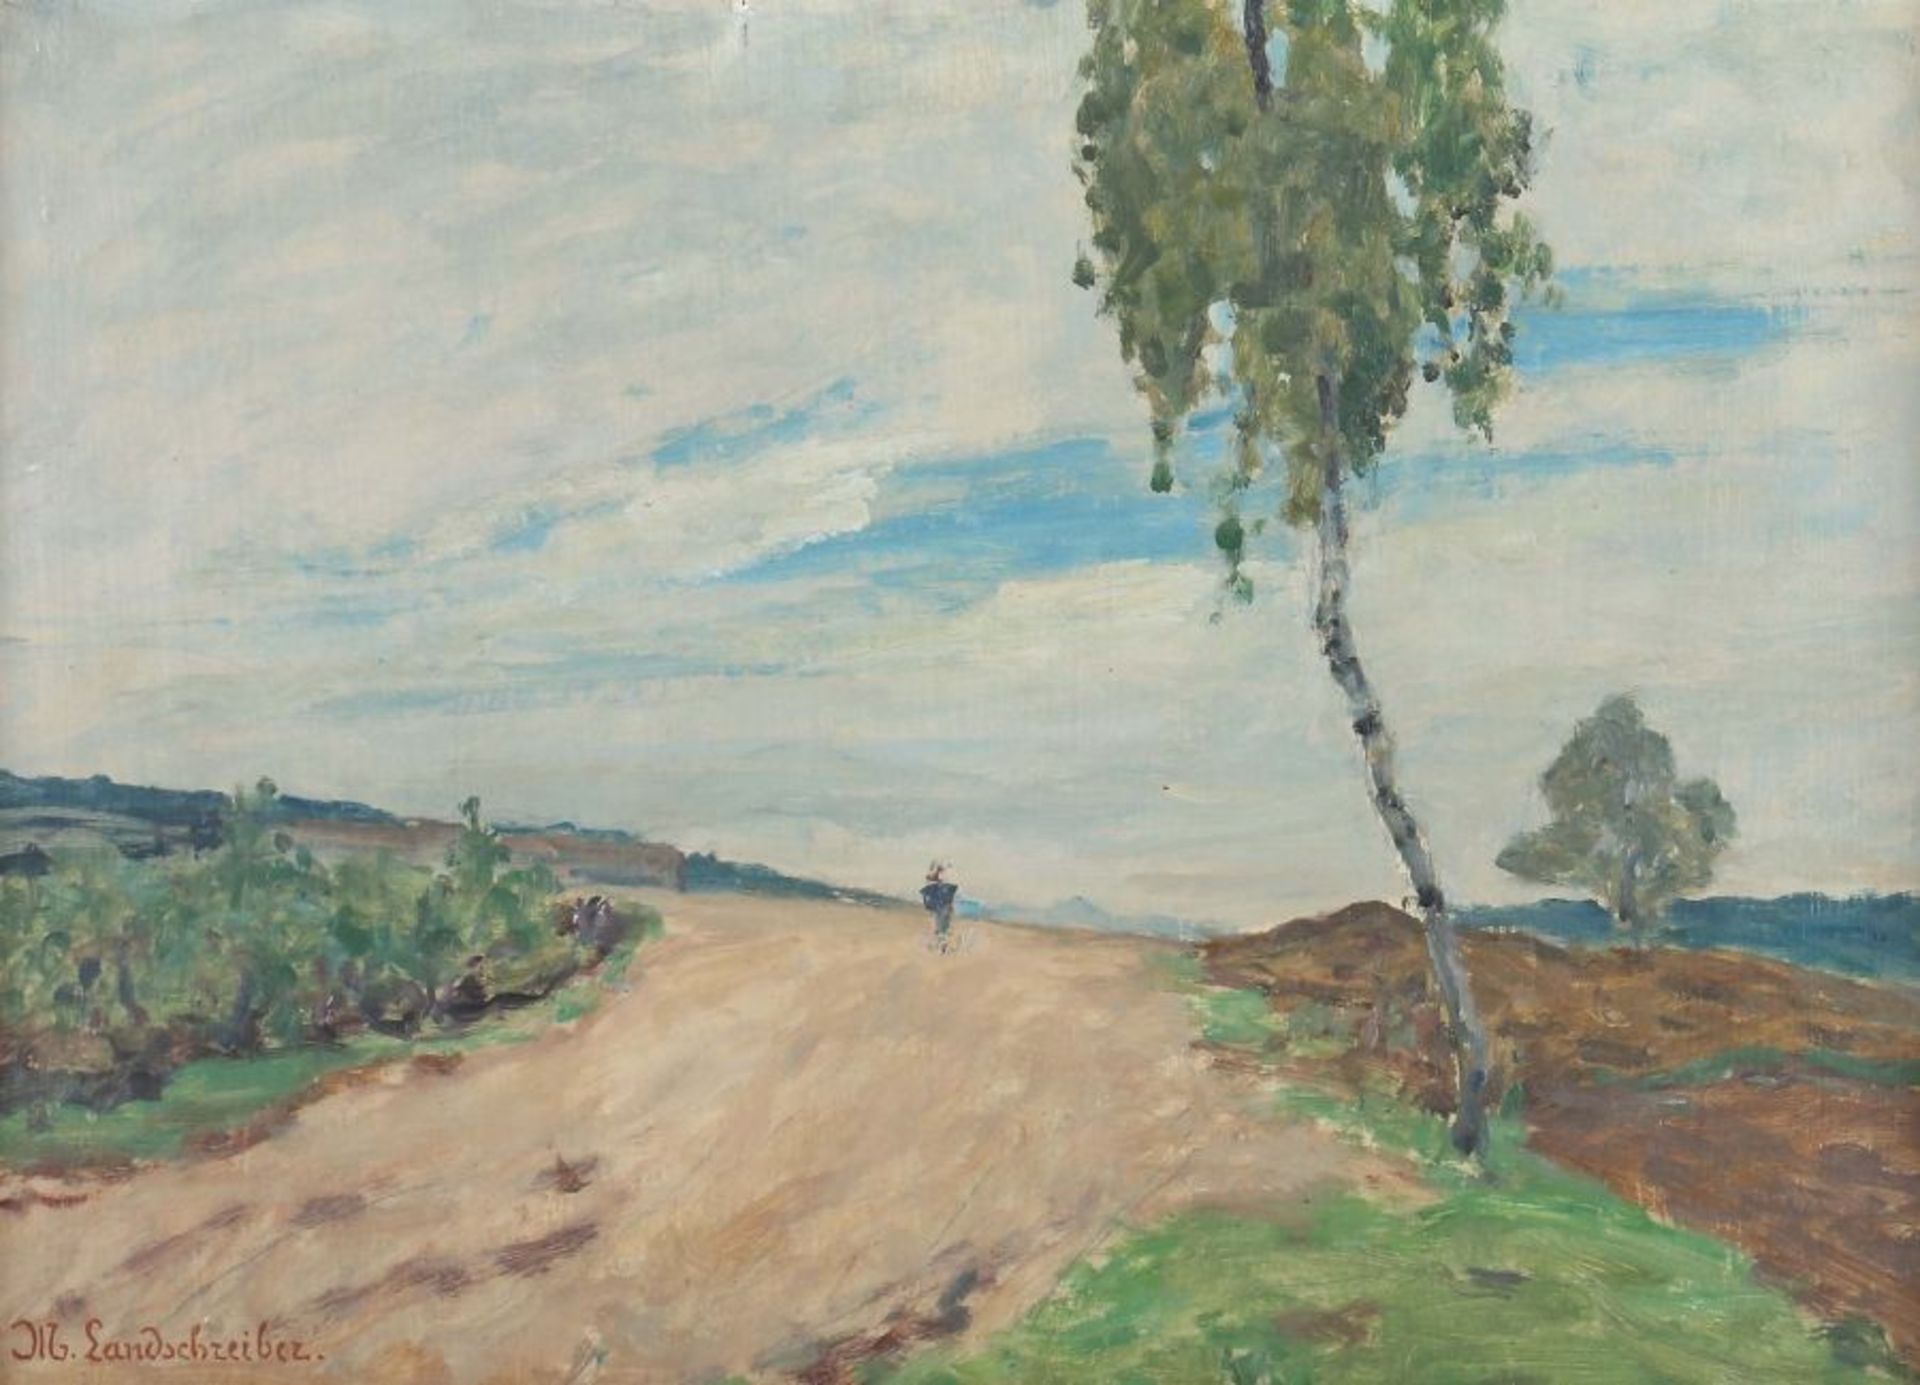 Landschreiber, Max 1880 - 1961, deutscher Maler. "Feldweg", Blick auf die weite hügelige Landschaft,